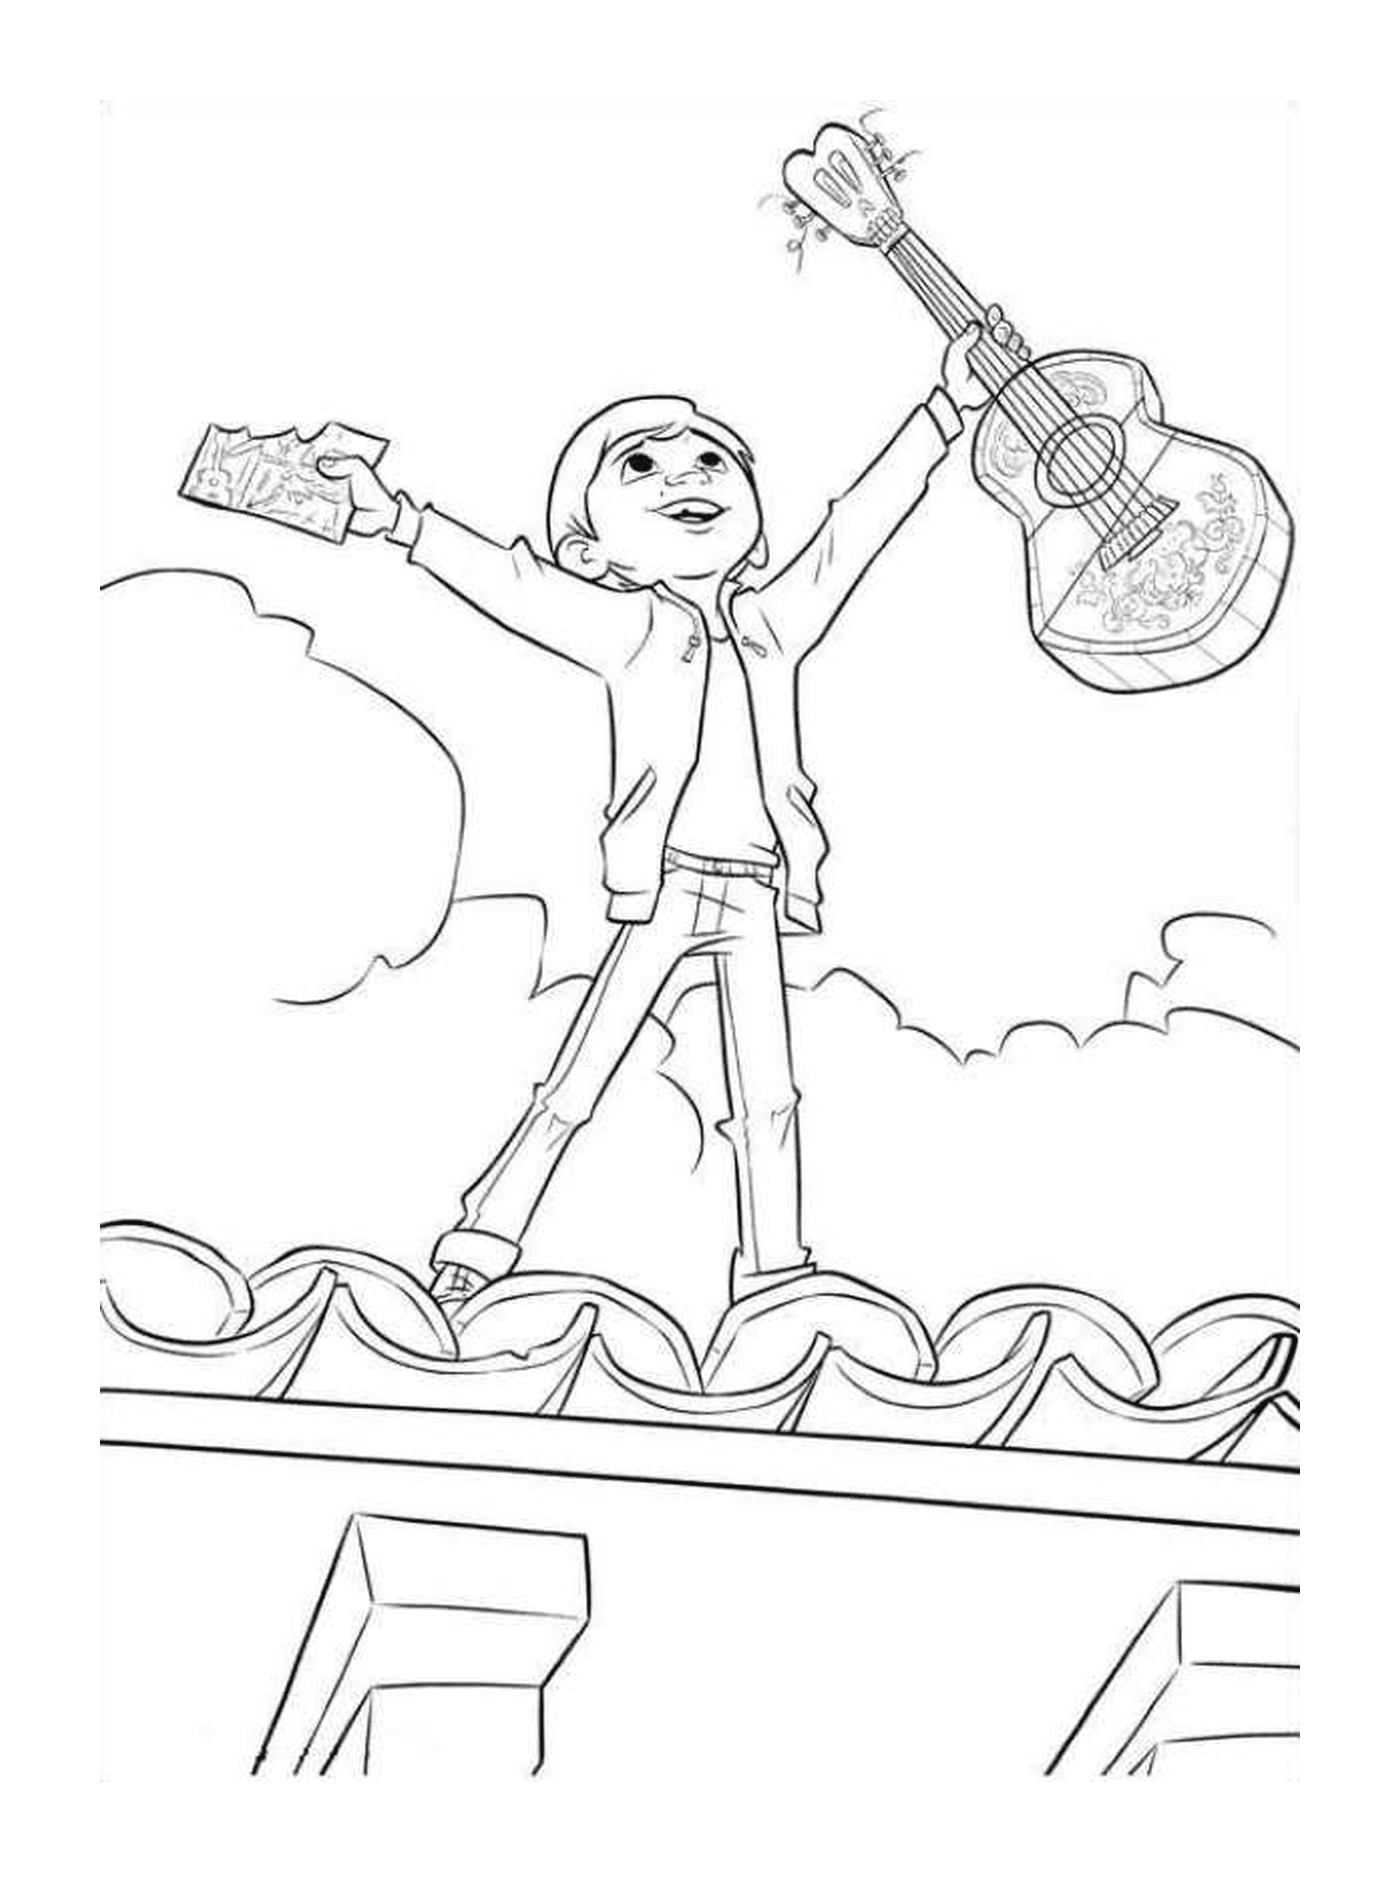  Мигель на крыше дома со своей гитарой, символом свободы 